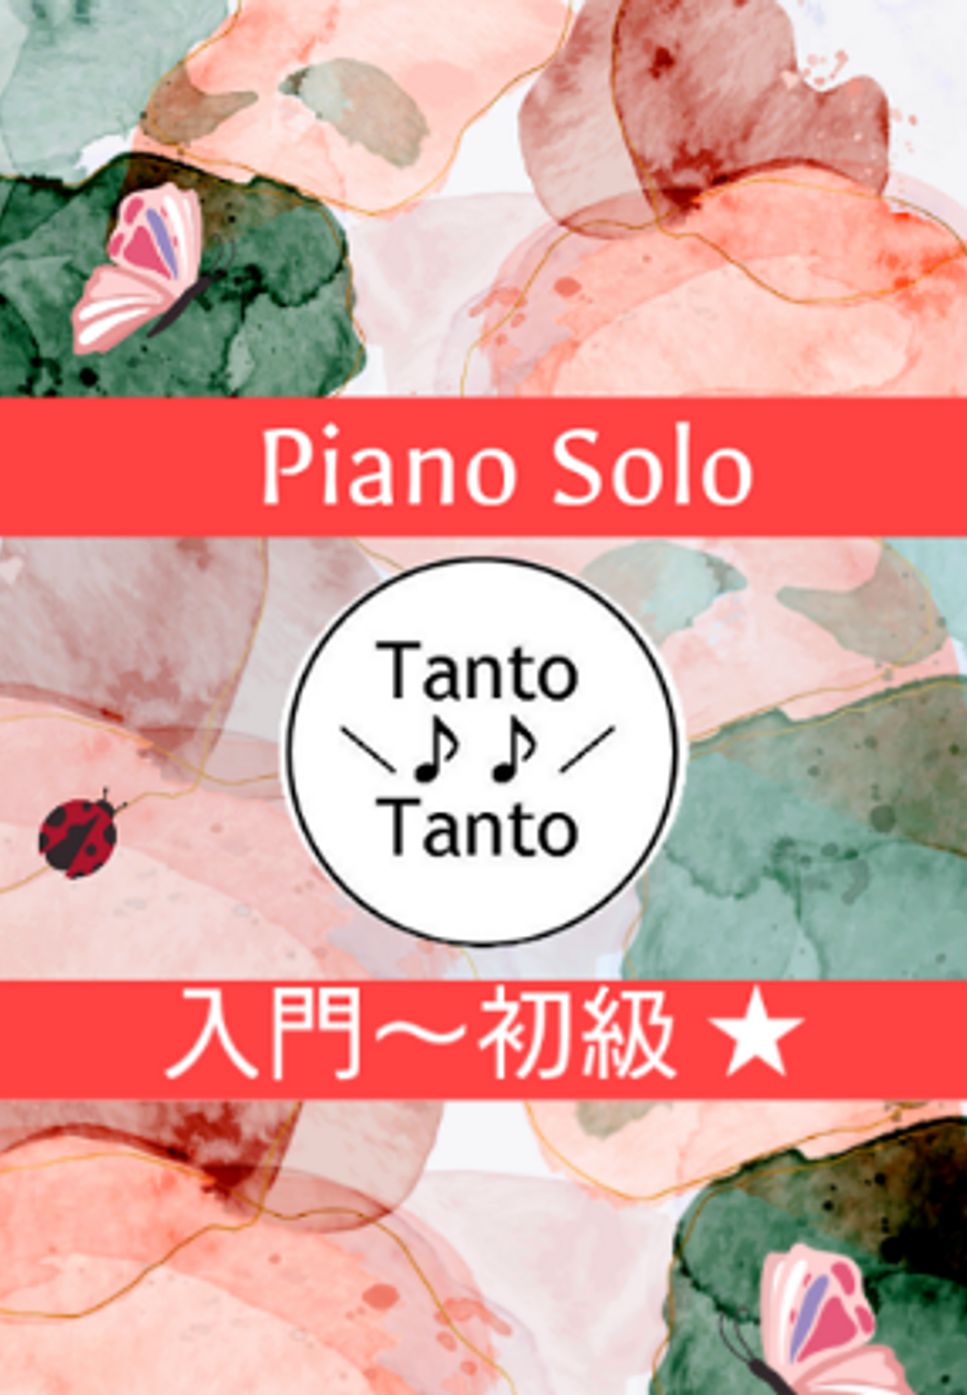 ルートヴィヒ・ヴァン・ベートーヴェン - ROCKIN ODE TO JOY ロッキン よろこびの歌 (入門〜初級/Piano Solo in C) by Tanto Tanto